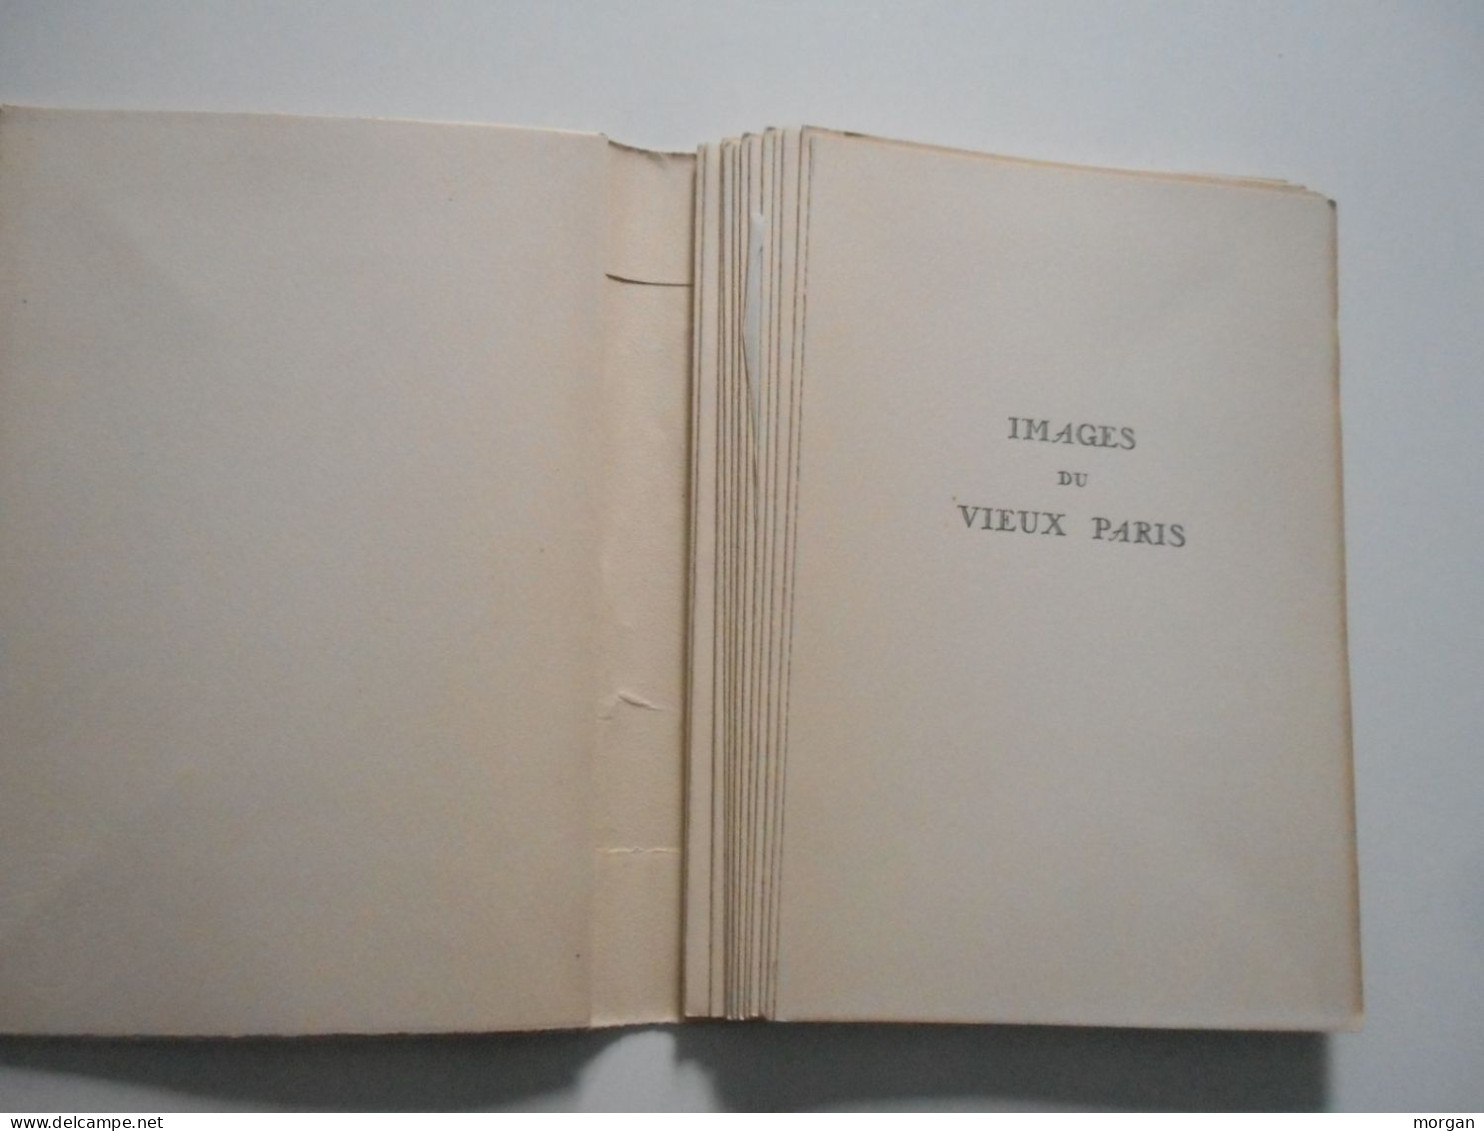 IMAGES DU VIEUX PARIS, 1951, André SALMON, POINTES SECHES DE CH. SAMSON, AUX HEURES CLAIRES - Paris